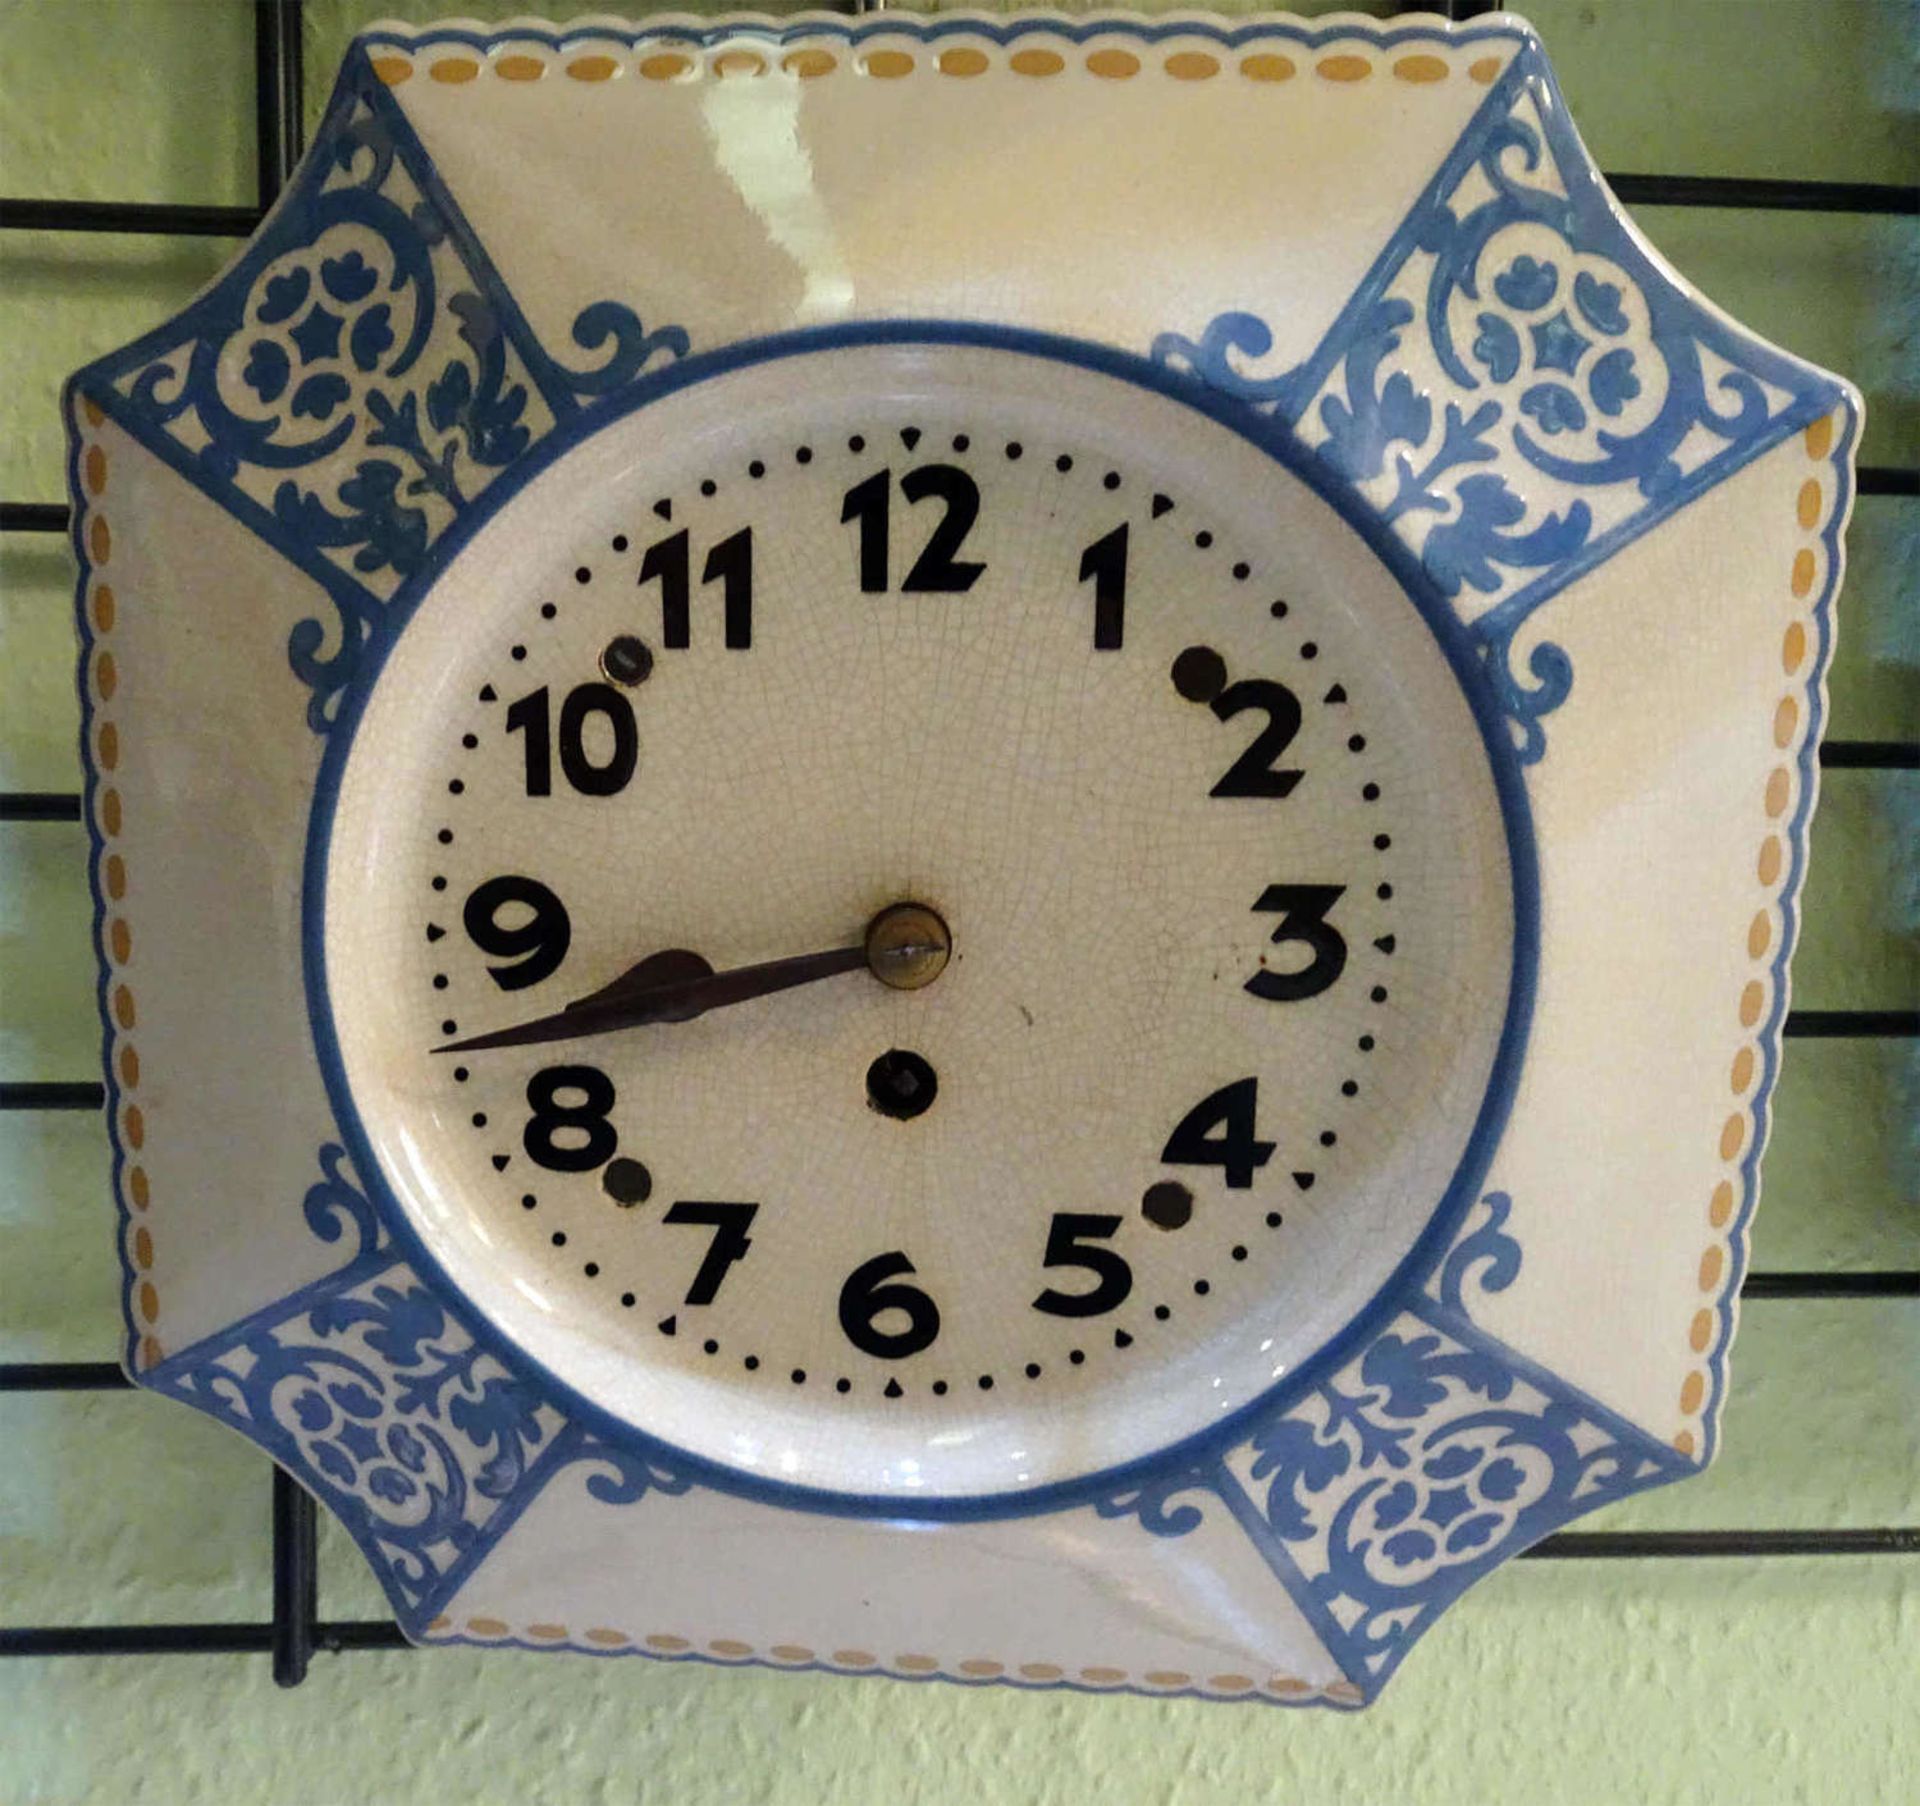 Küchenuhr Jugendstil. Breite ca. 25 cm, Höhe ca. 25 cmKitchen clock Art Nouveau. Width about 25